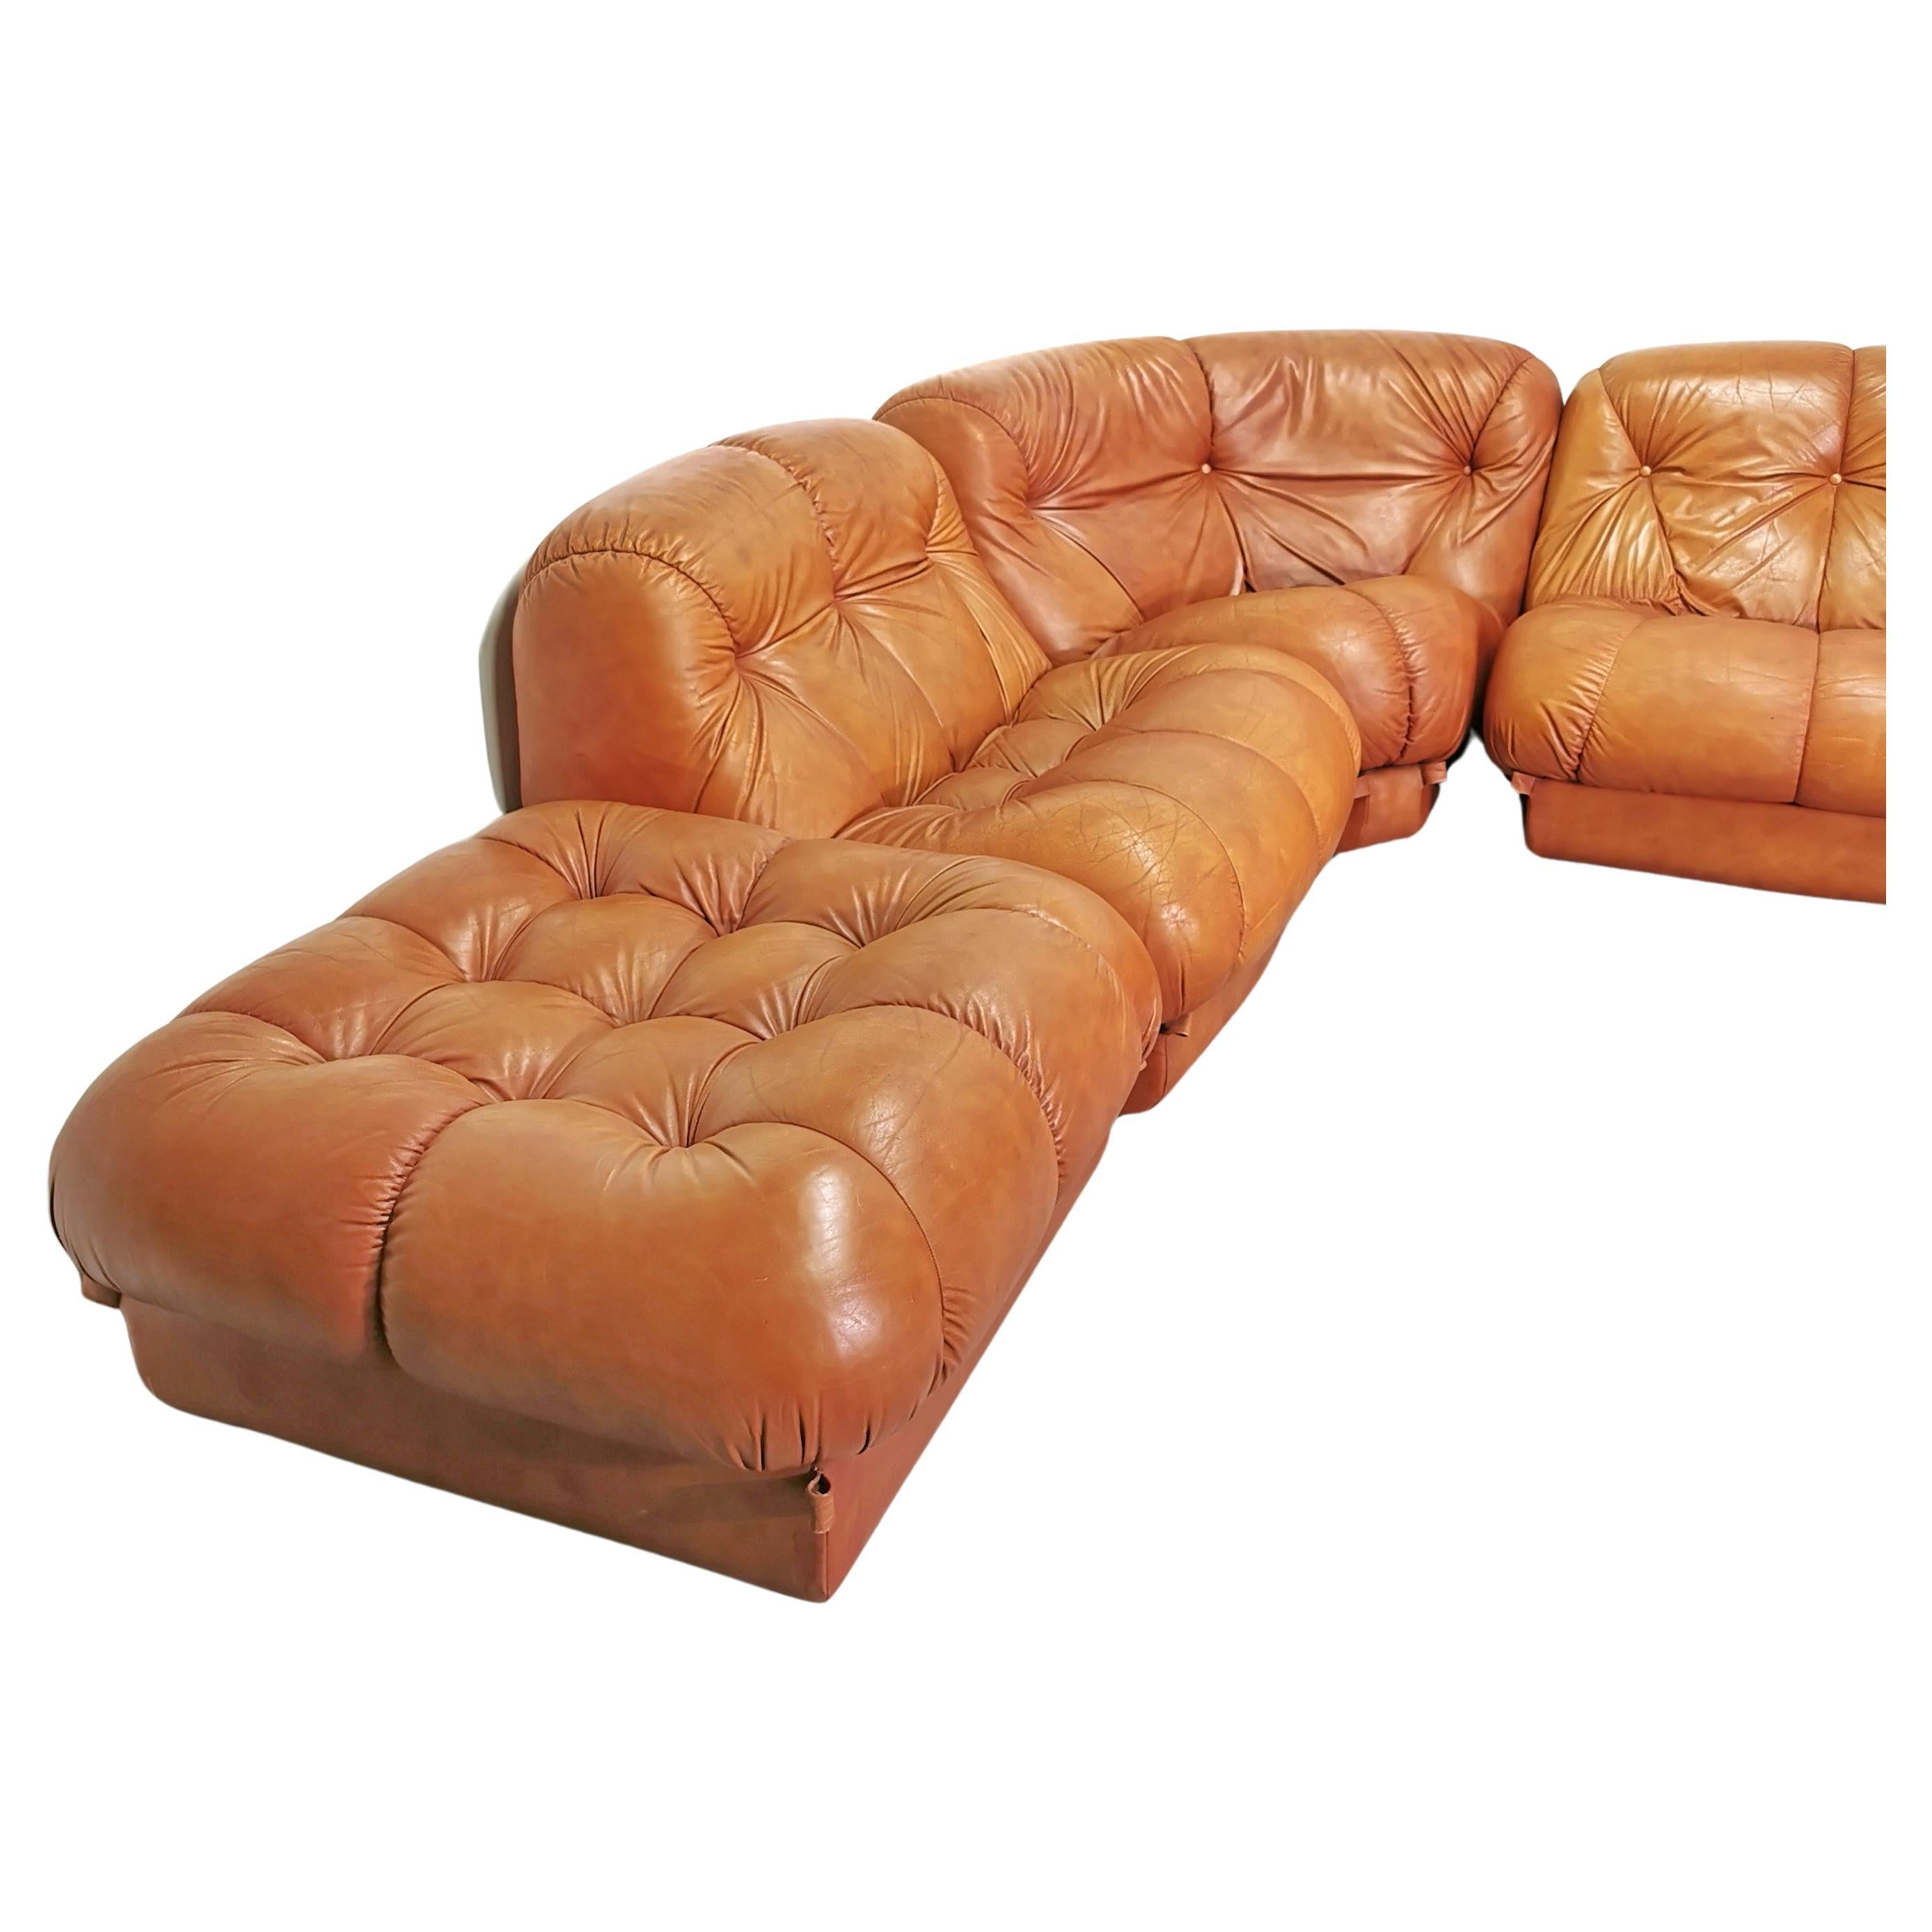 Modulares Cognaq-Ledersofa Modell Nuvolone, entworfen in den 1970er Jahren von Rino Maturi für Mimo Design. Das Sofa besteht aus  von 5 Sitzen einschließlich 1 Ottomane und eine Ecke Modul. das Sofa ist in sehr gutem Zustand mit kleinen Zeichen der